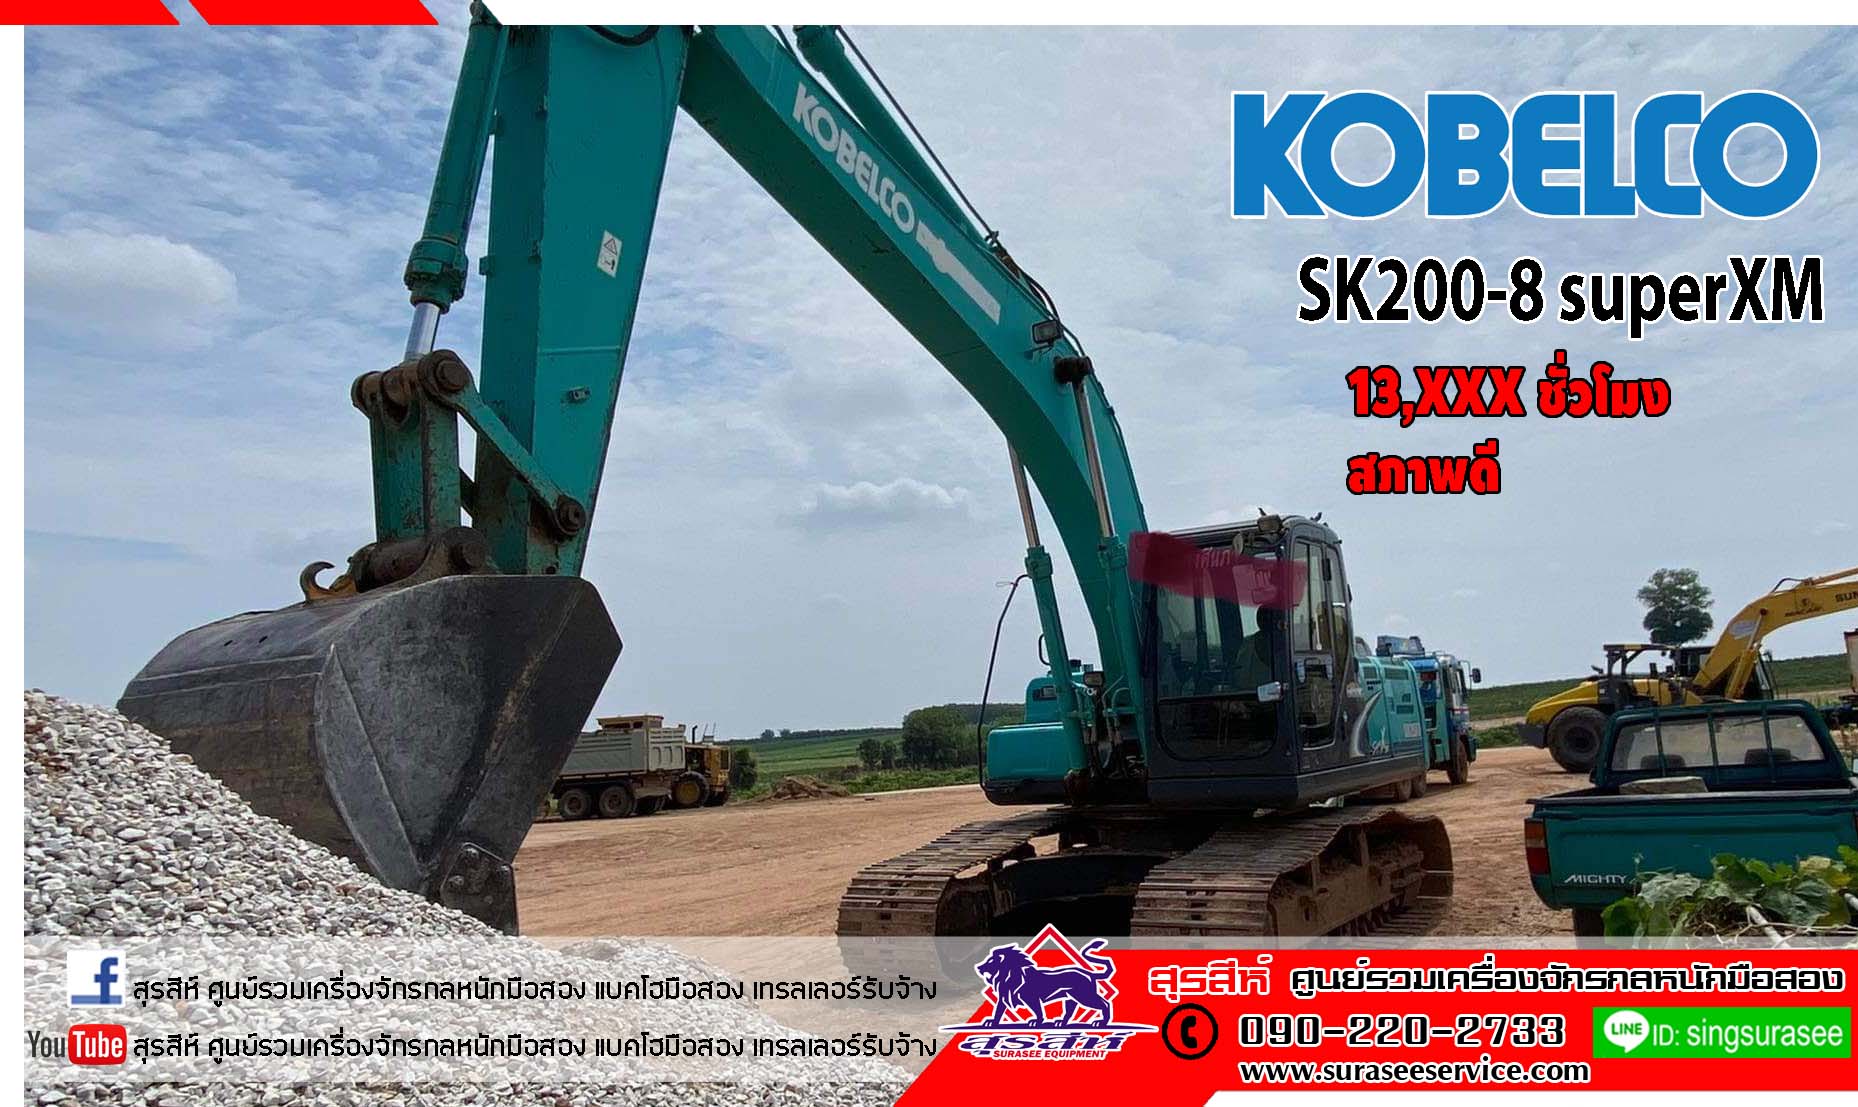 ราคาพิเศษโทร KOBELCO SK200-8 SuperXM เฟรมตั้ง